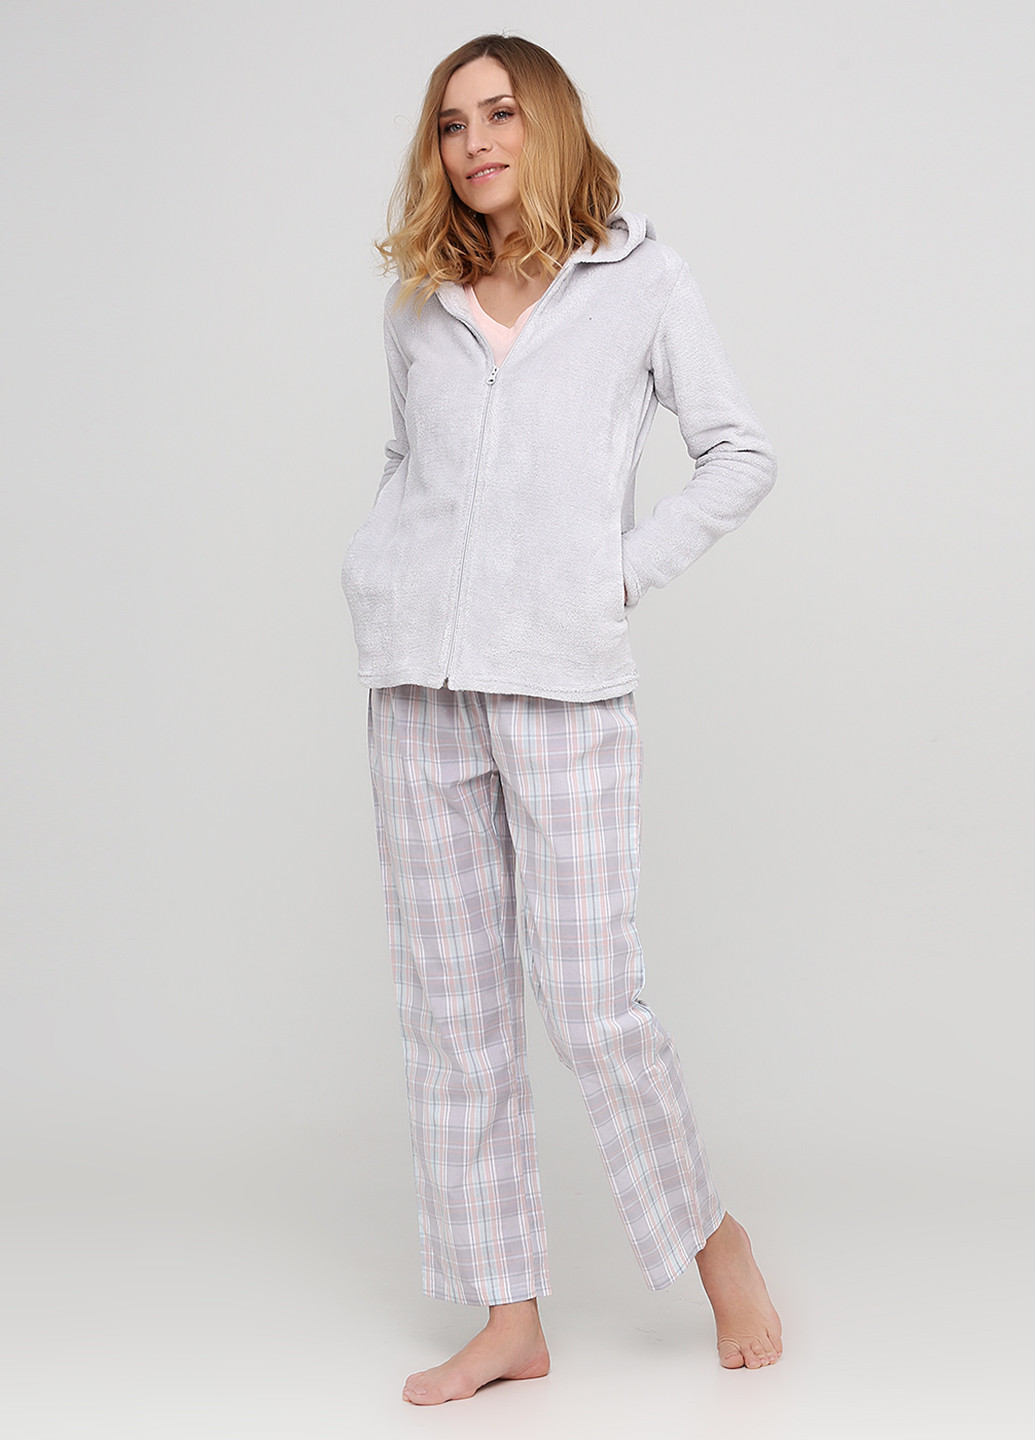 Комбинированная всесезон пижама (толстовка, футболка, брюки) Anna max